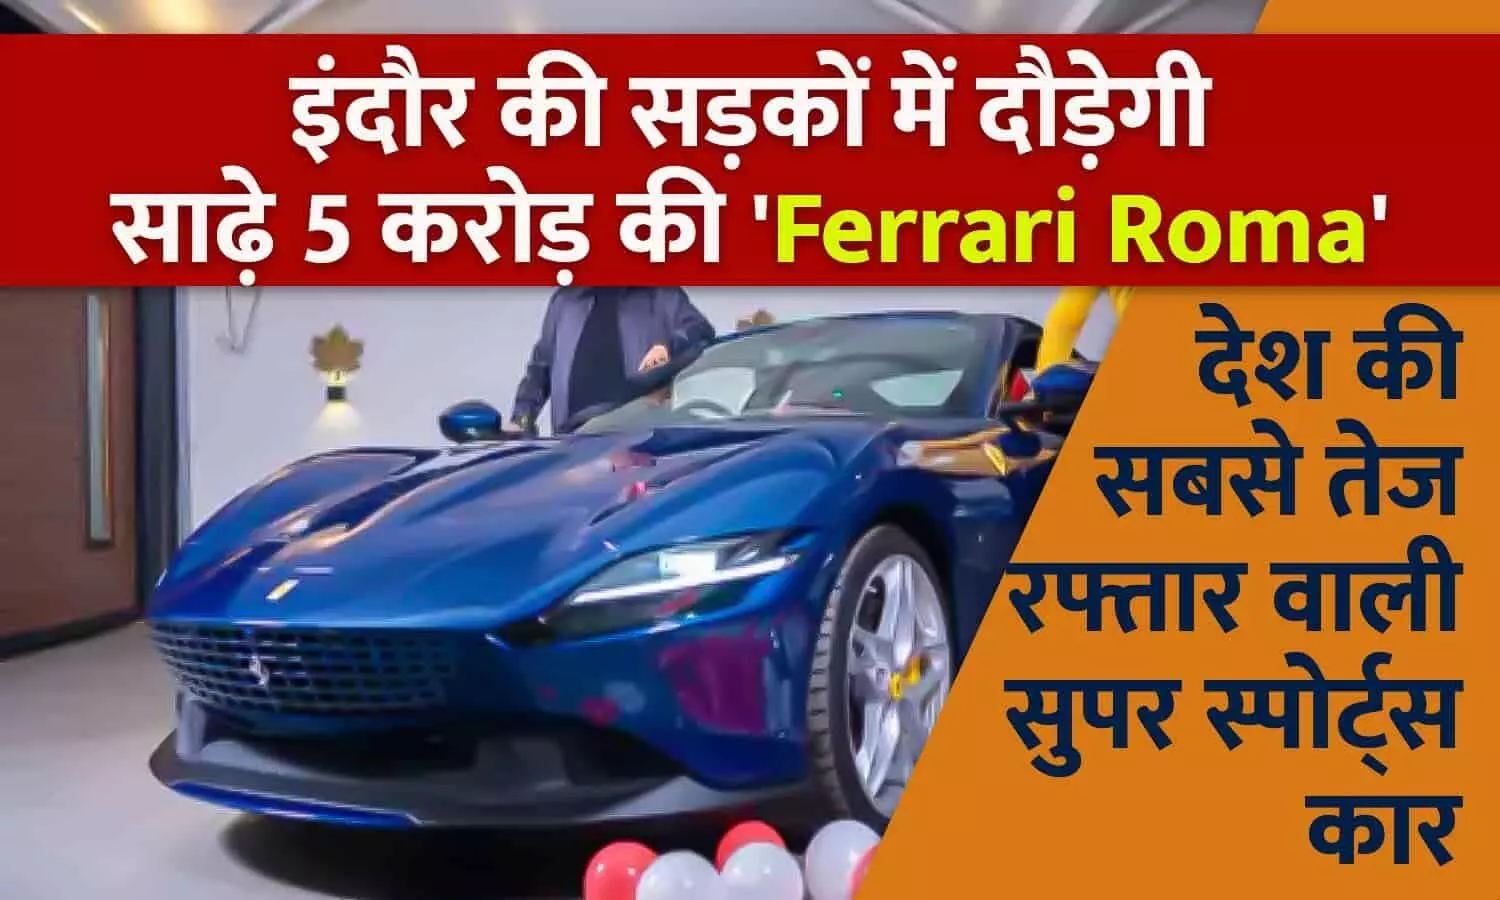 इंदौर में सुपर स्पोर्ट कार्स की भरमार: अब इंदौर की सड़कों में दौड़ेगी देश की सबसे तेज रफ़्तार वाली इटालियन ब्यूटी Ferrari Roma, कीमत 5.45 करोड़; जानिए खासियत...